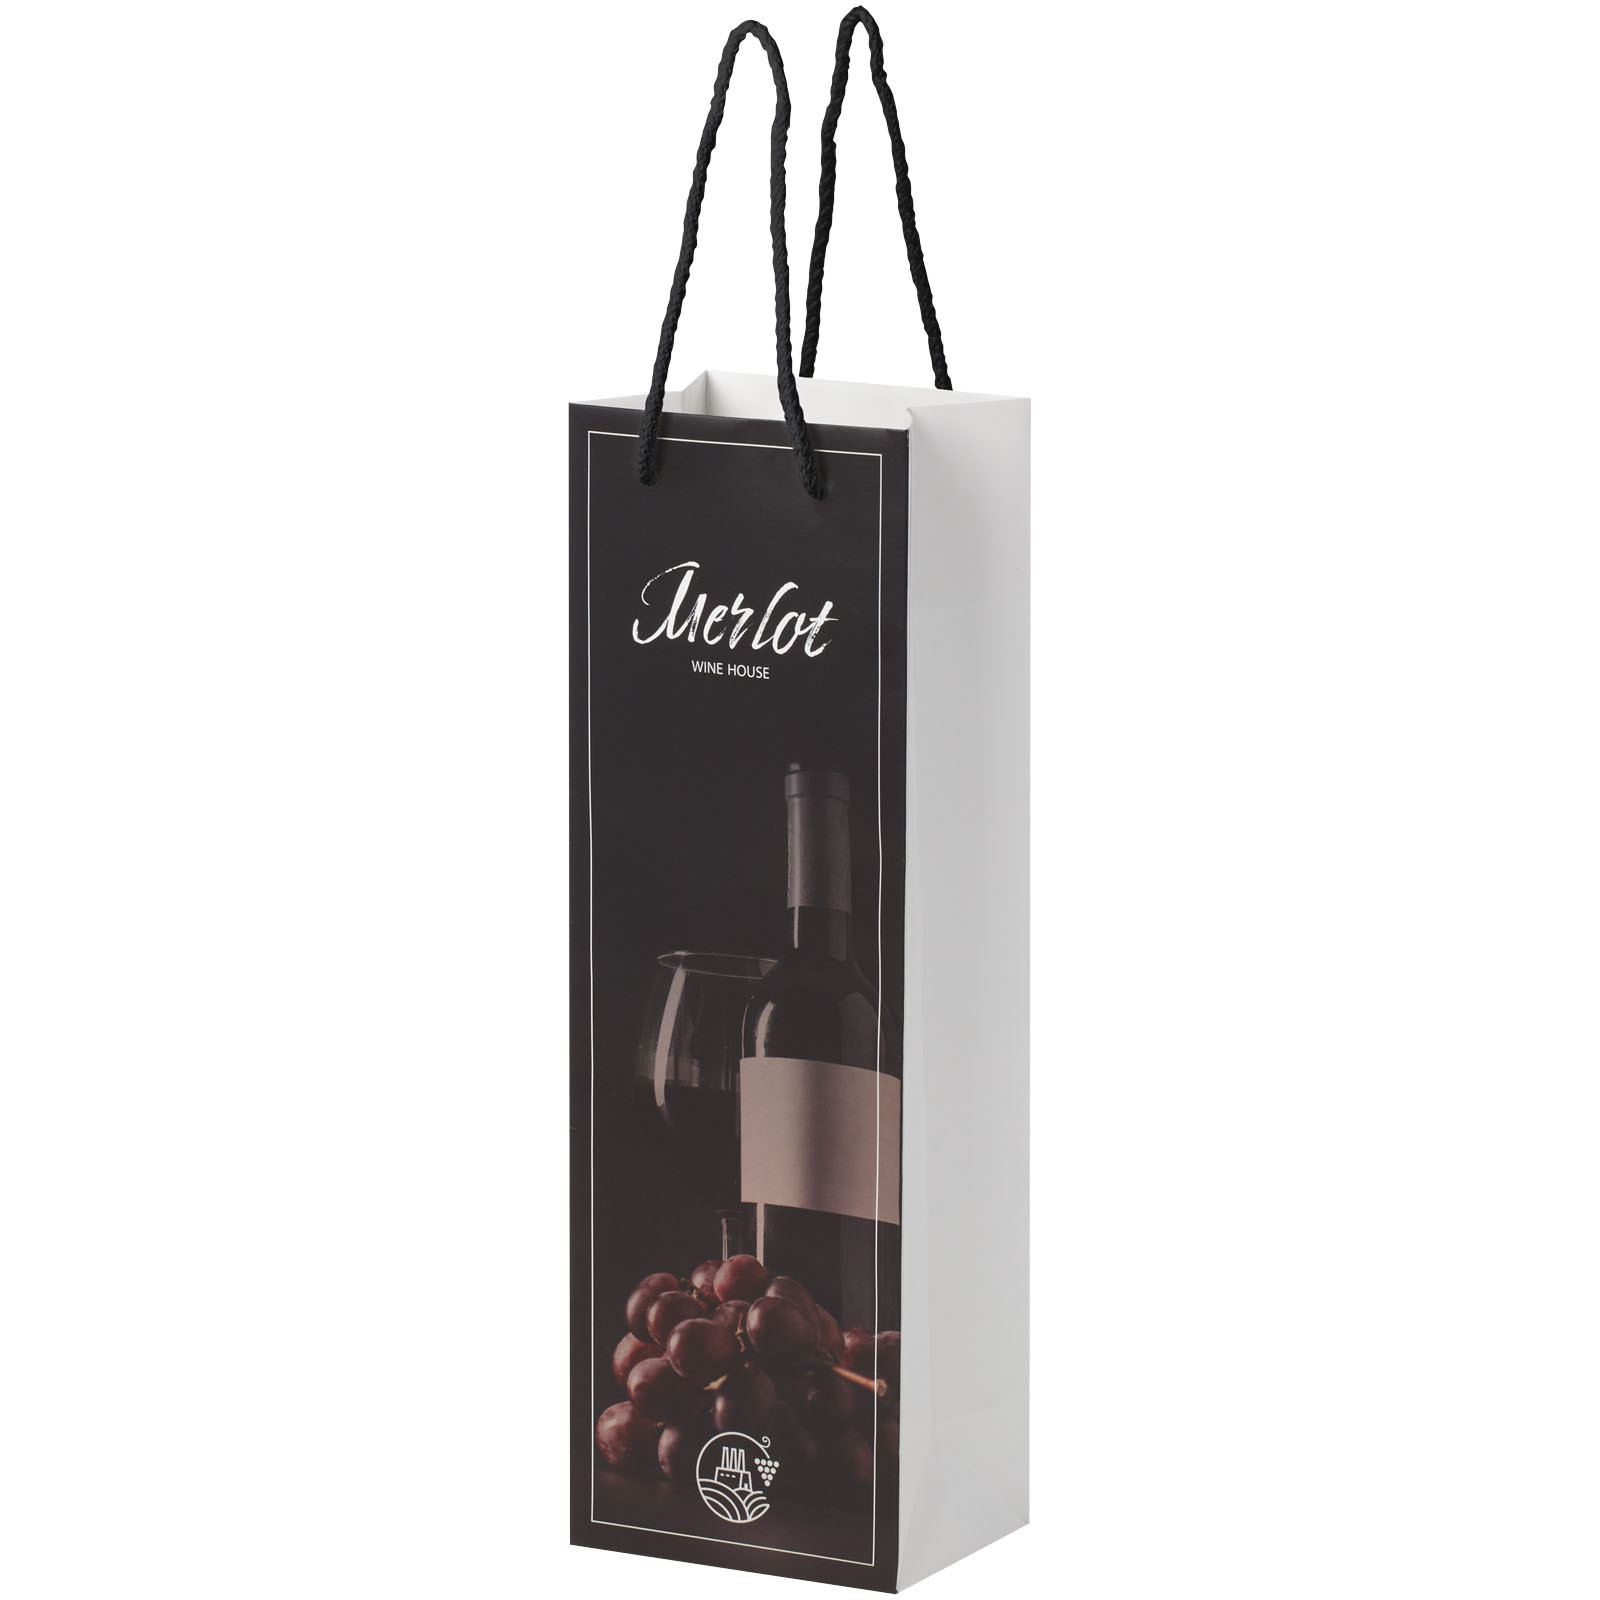 Sacchetto in carta integra da 170 g / m2 per bottiglia di vino realizzato a mano con manici di plastica